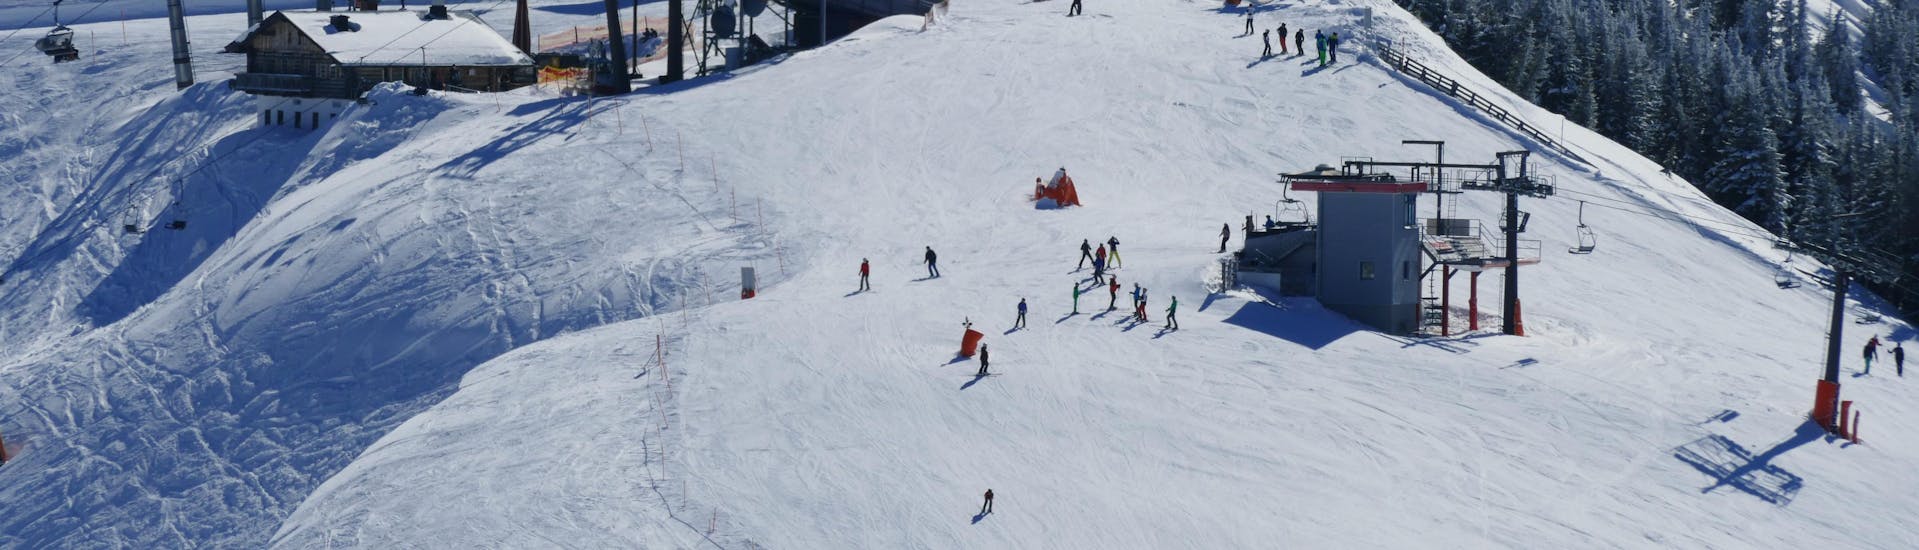 Ausblick auf die sonnige Berglandschaft beim Skifahren lernen mit den Skischulen in Großarl.